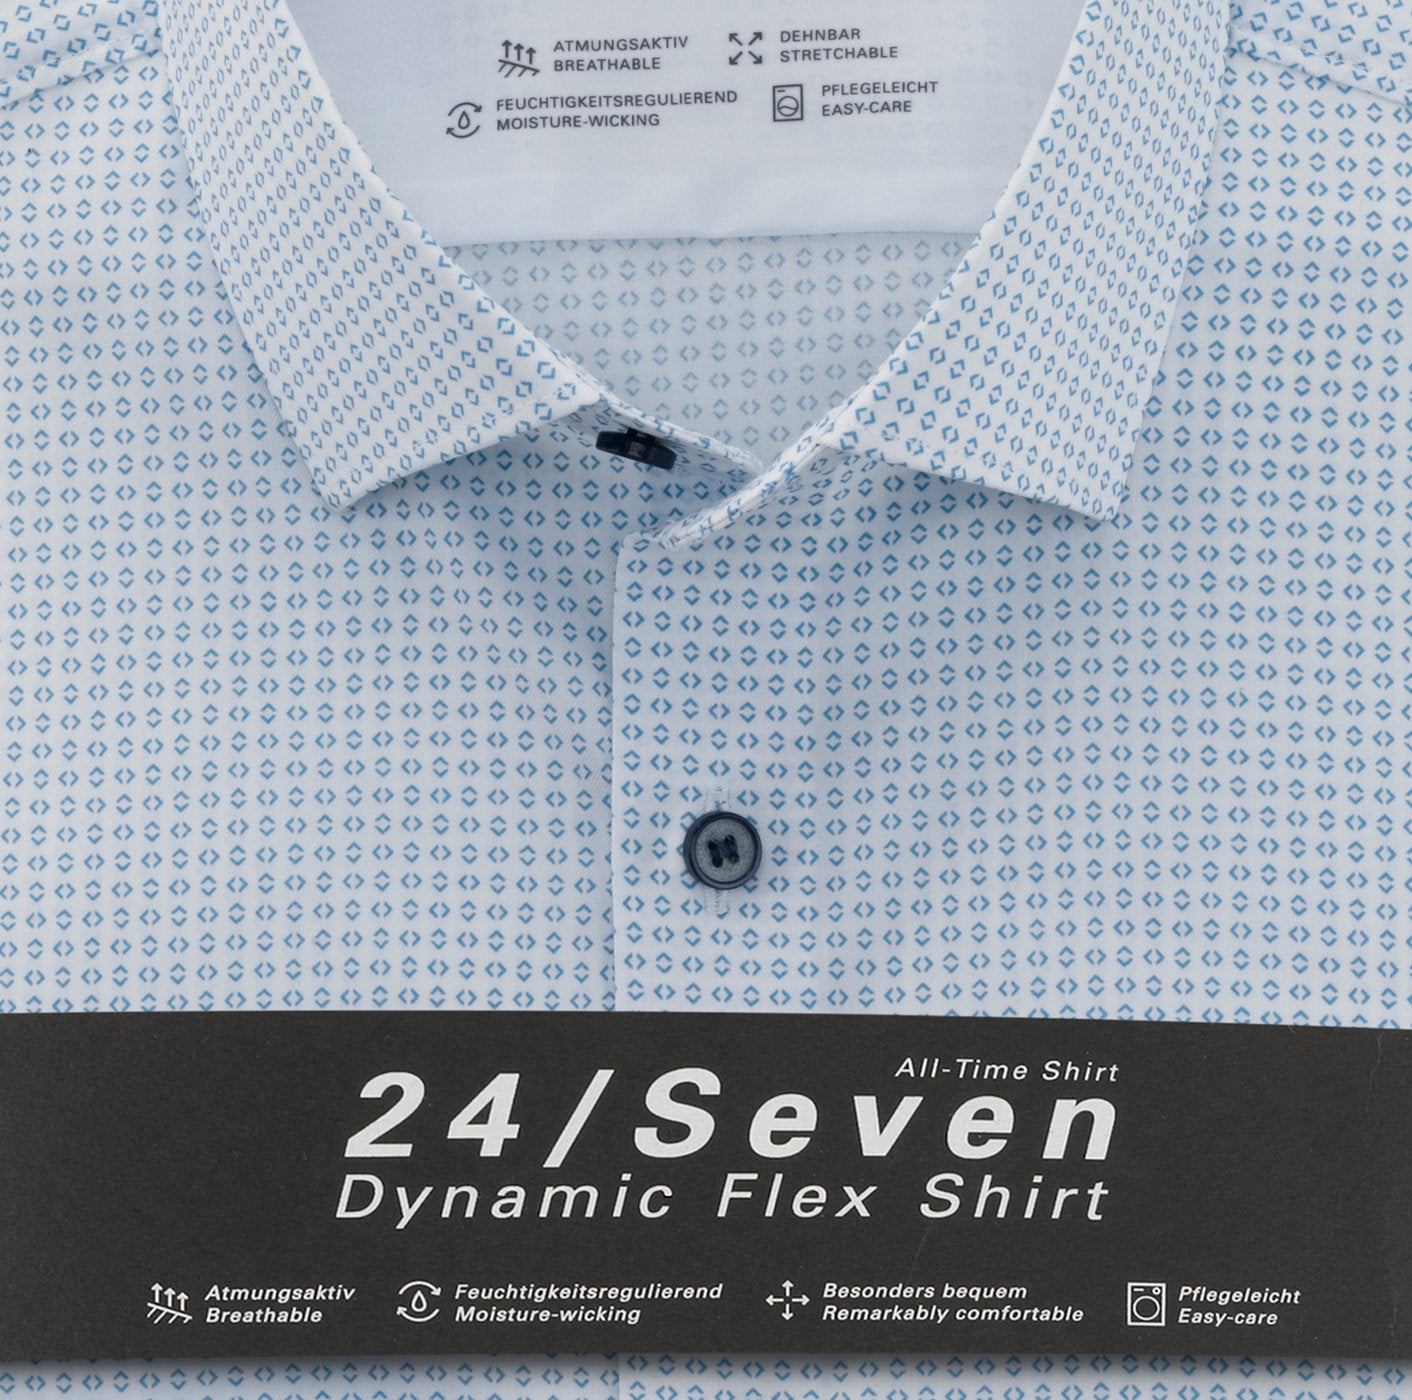 Chemise à motifs pour homme OLYMP coupe ajustée blanche | Georgespaul